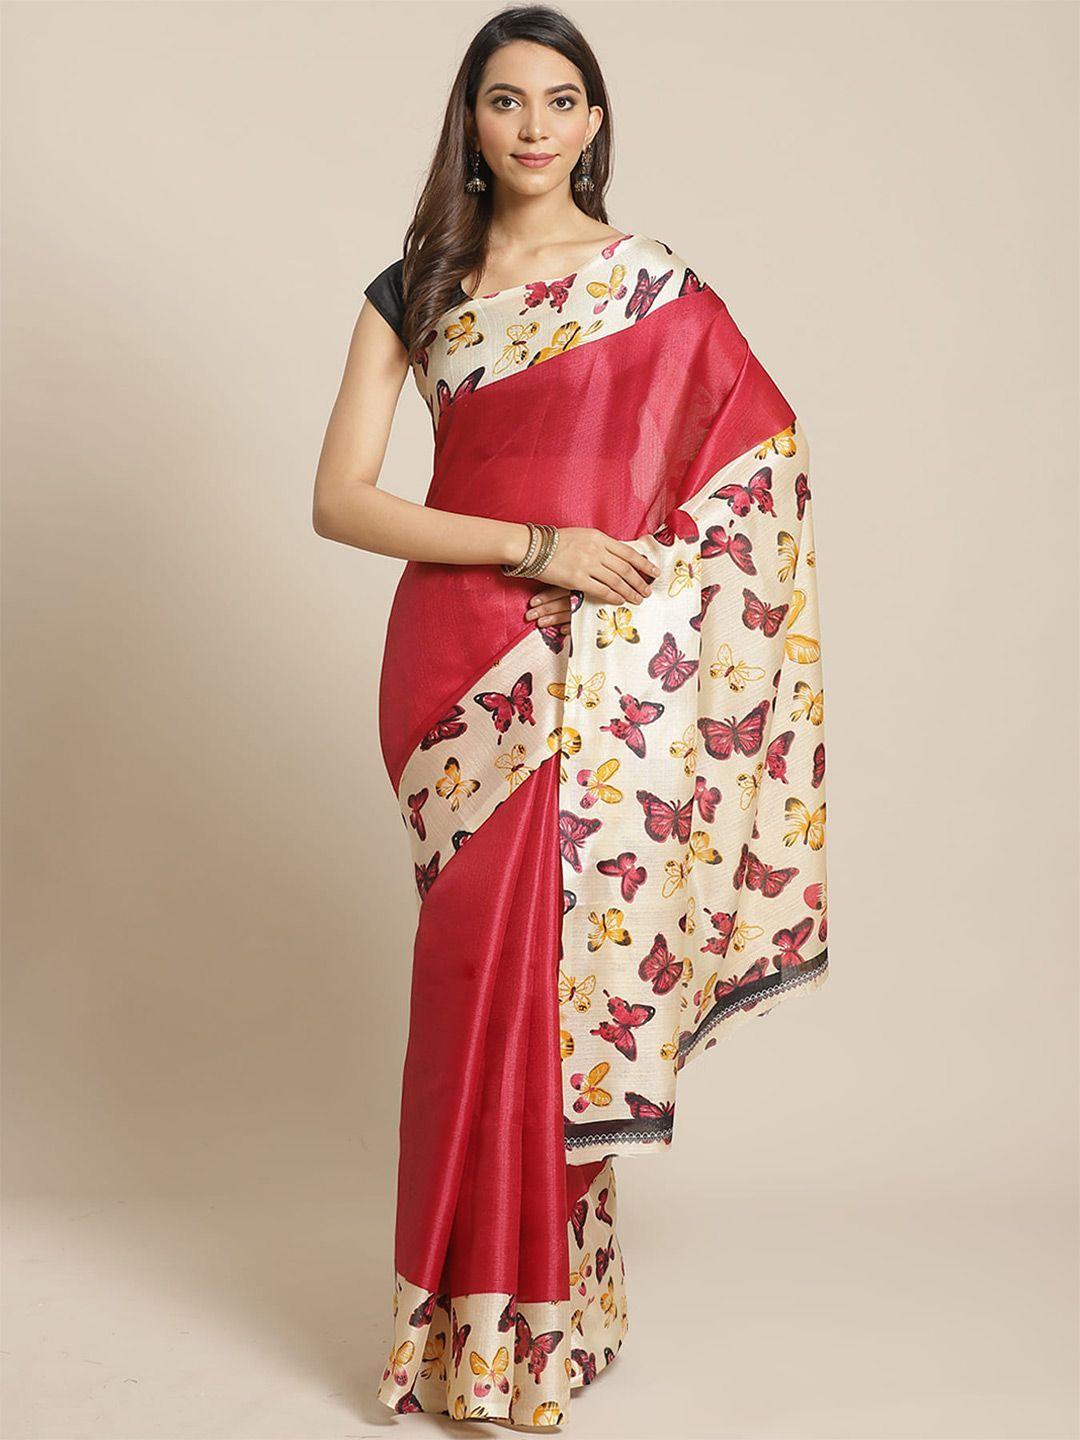 kalini quirky printed banarasi saree